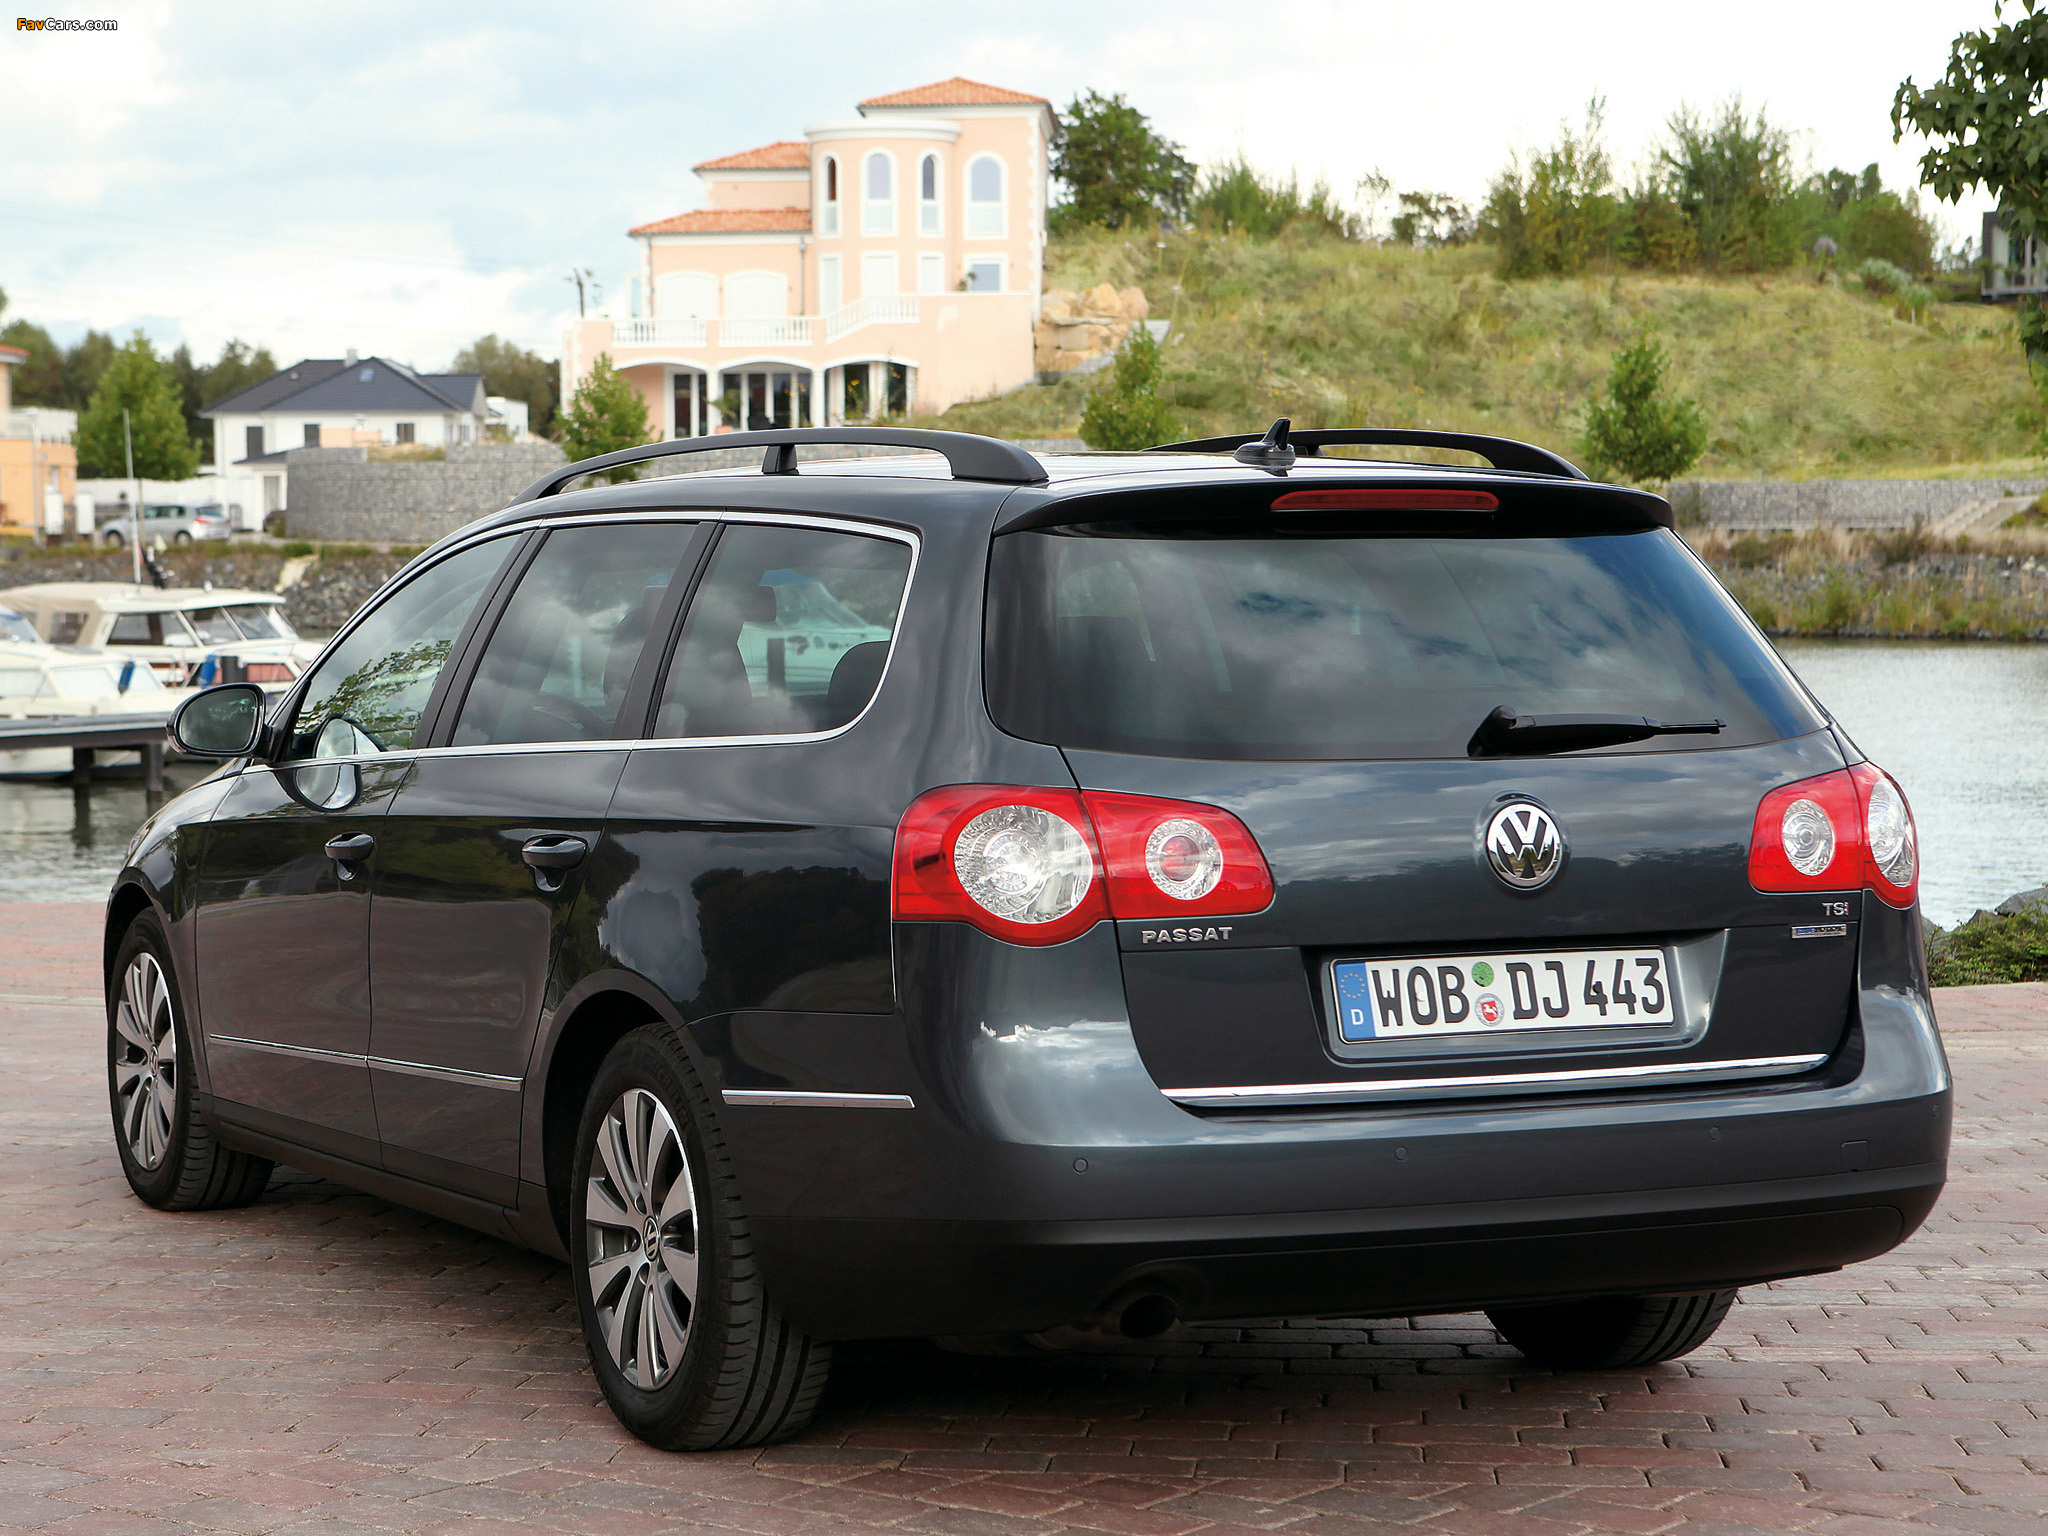 Б 6 универсал. Volkswagen Passat 2008 универсал. Фольксваген Passat b6 variant. Volkswagen Passat b6 универсал. Пассат б6 2.0 универсал.